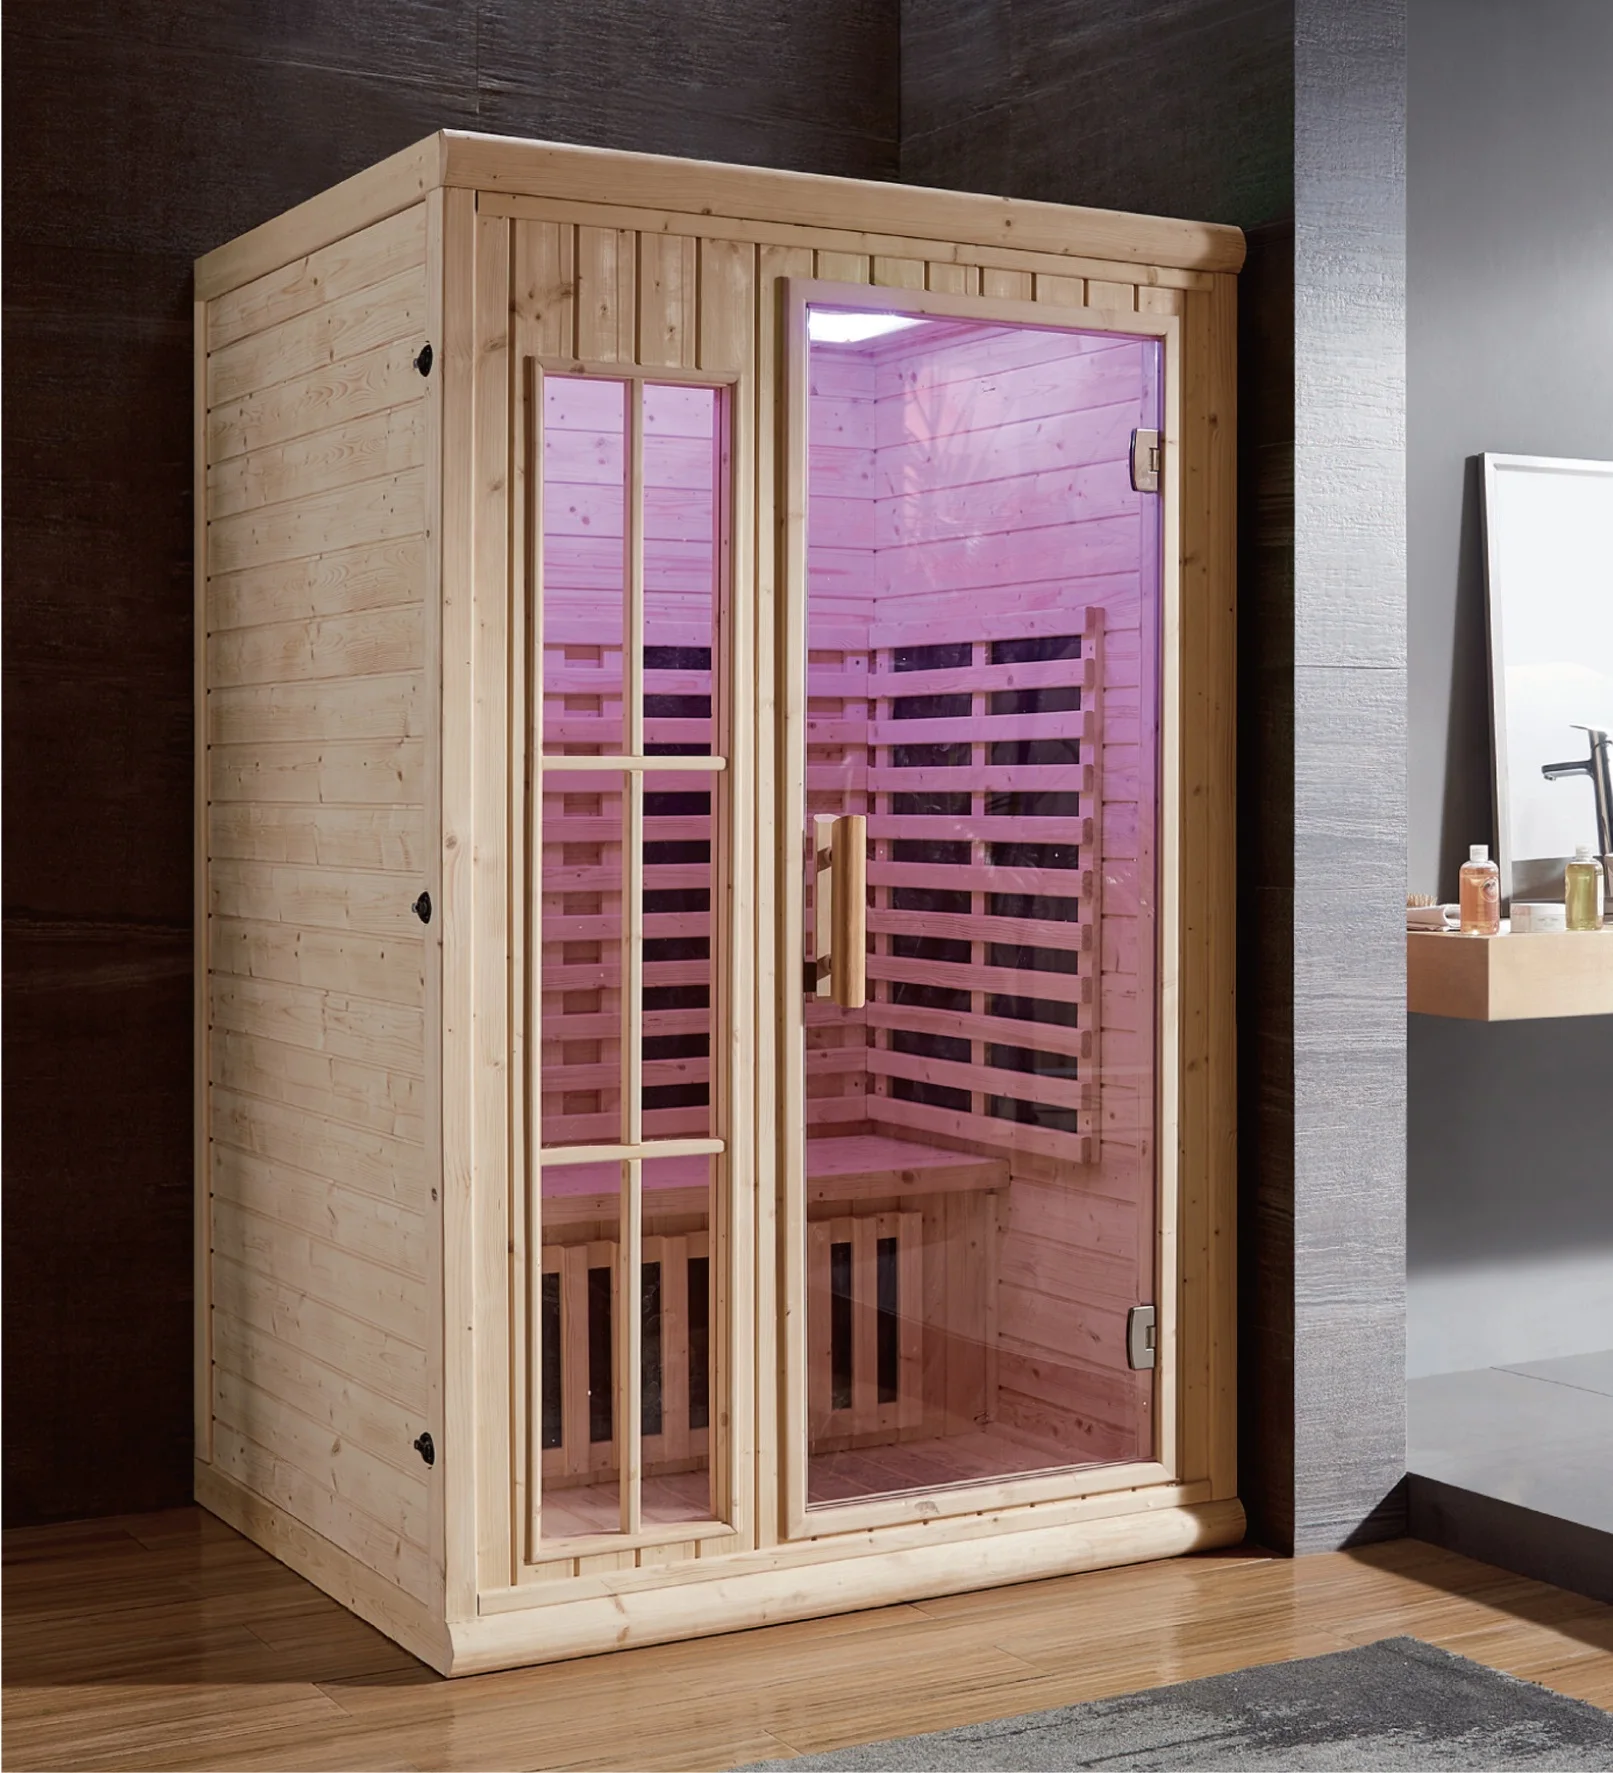 Hot Sale Portable Steam Sauna,Outdoor Sauna Steam Room,Steam And Sauna